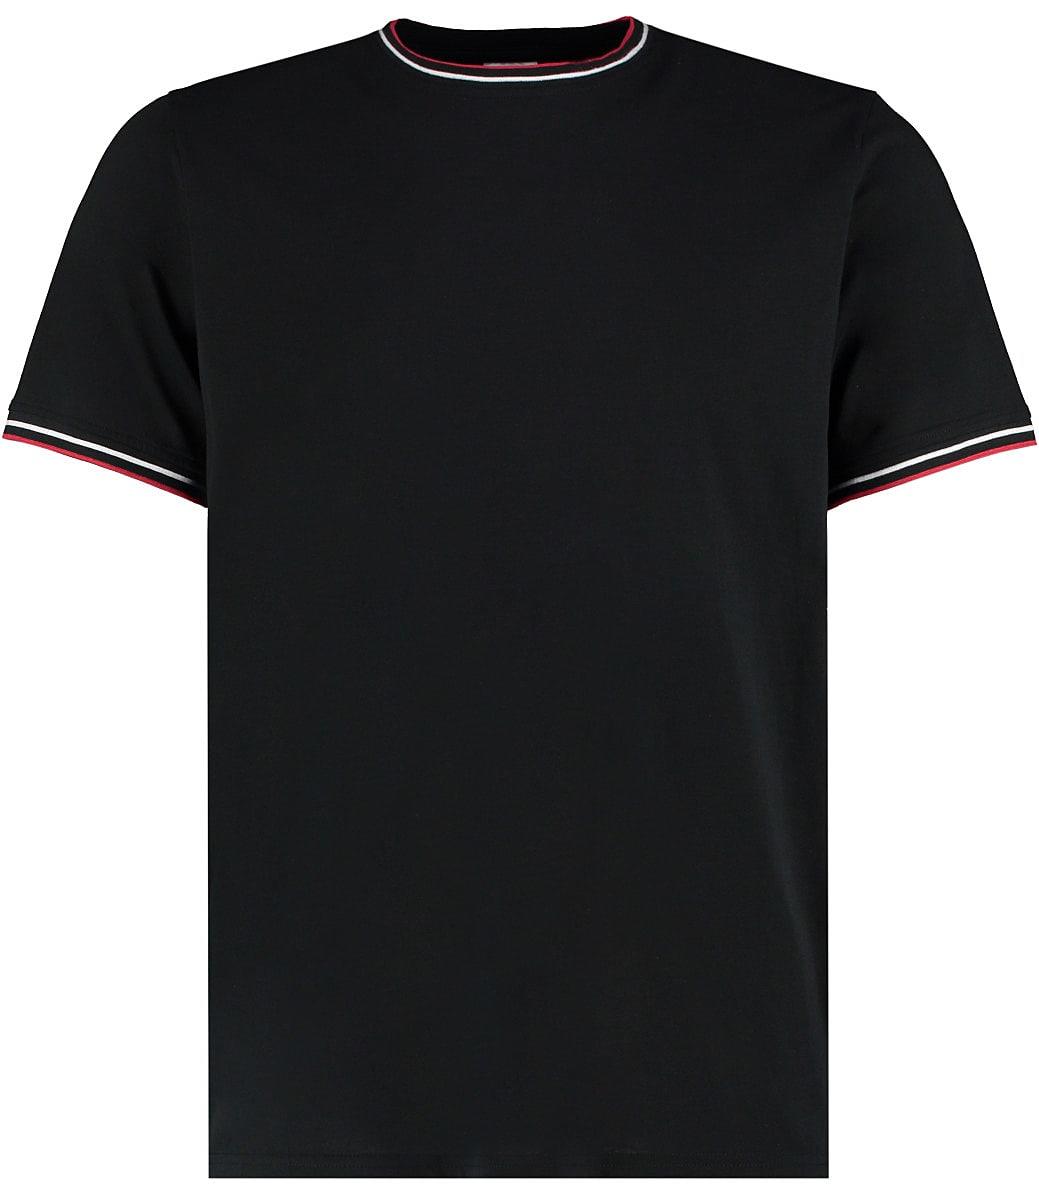 Kustom Kit Mens Tipped T-Shirt in Black / White / Red (Product Code: KK519)